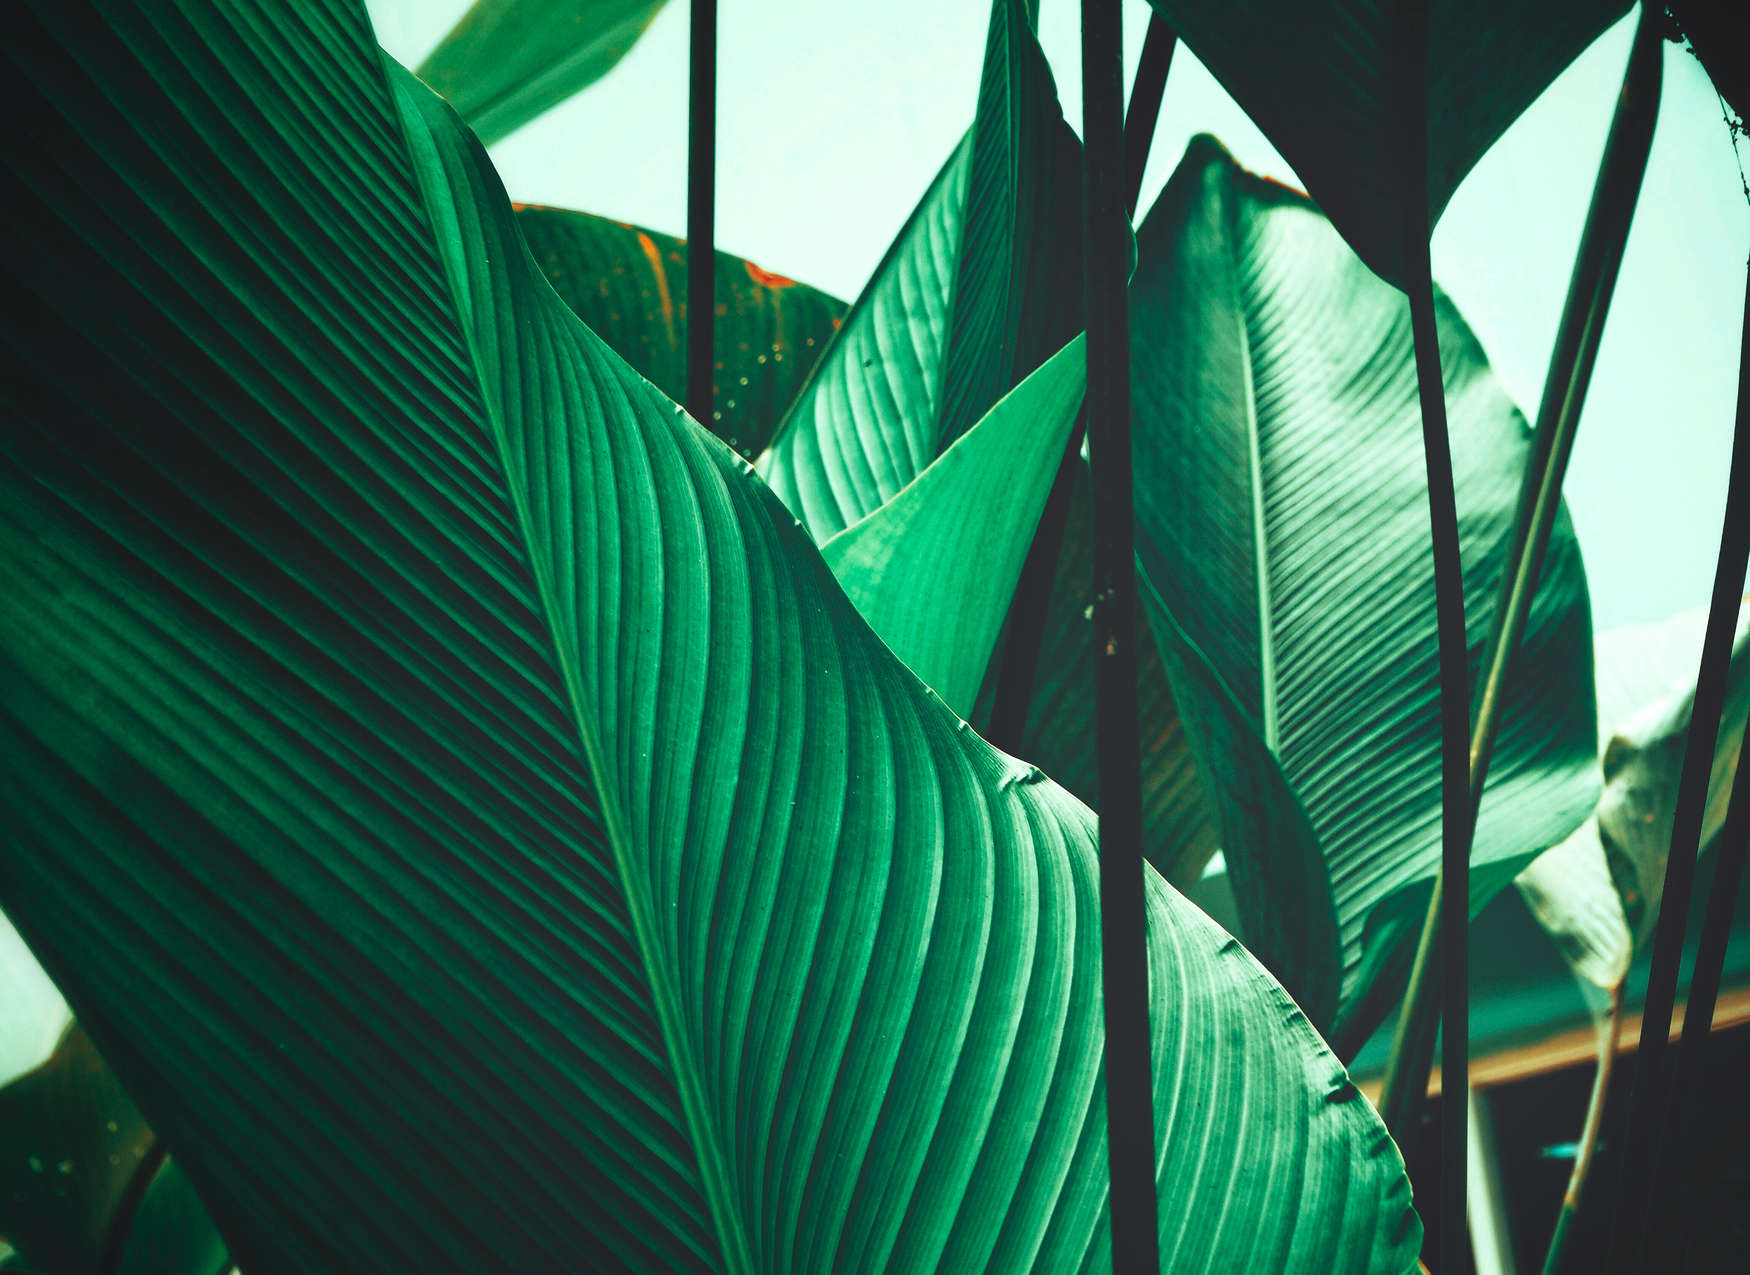             Carta da parati con foglie di palma e di banano - Verde, nero
        